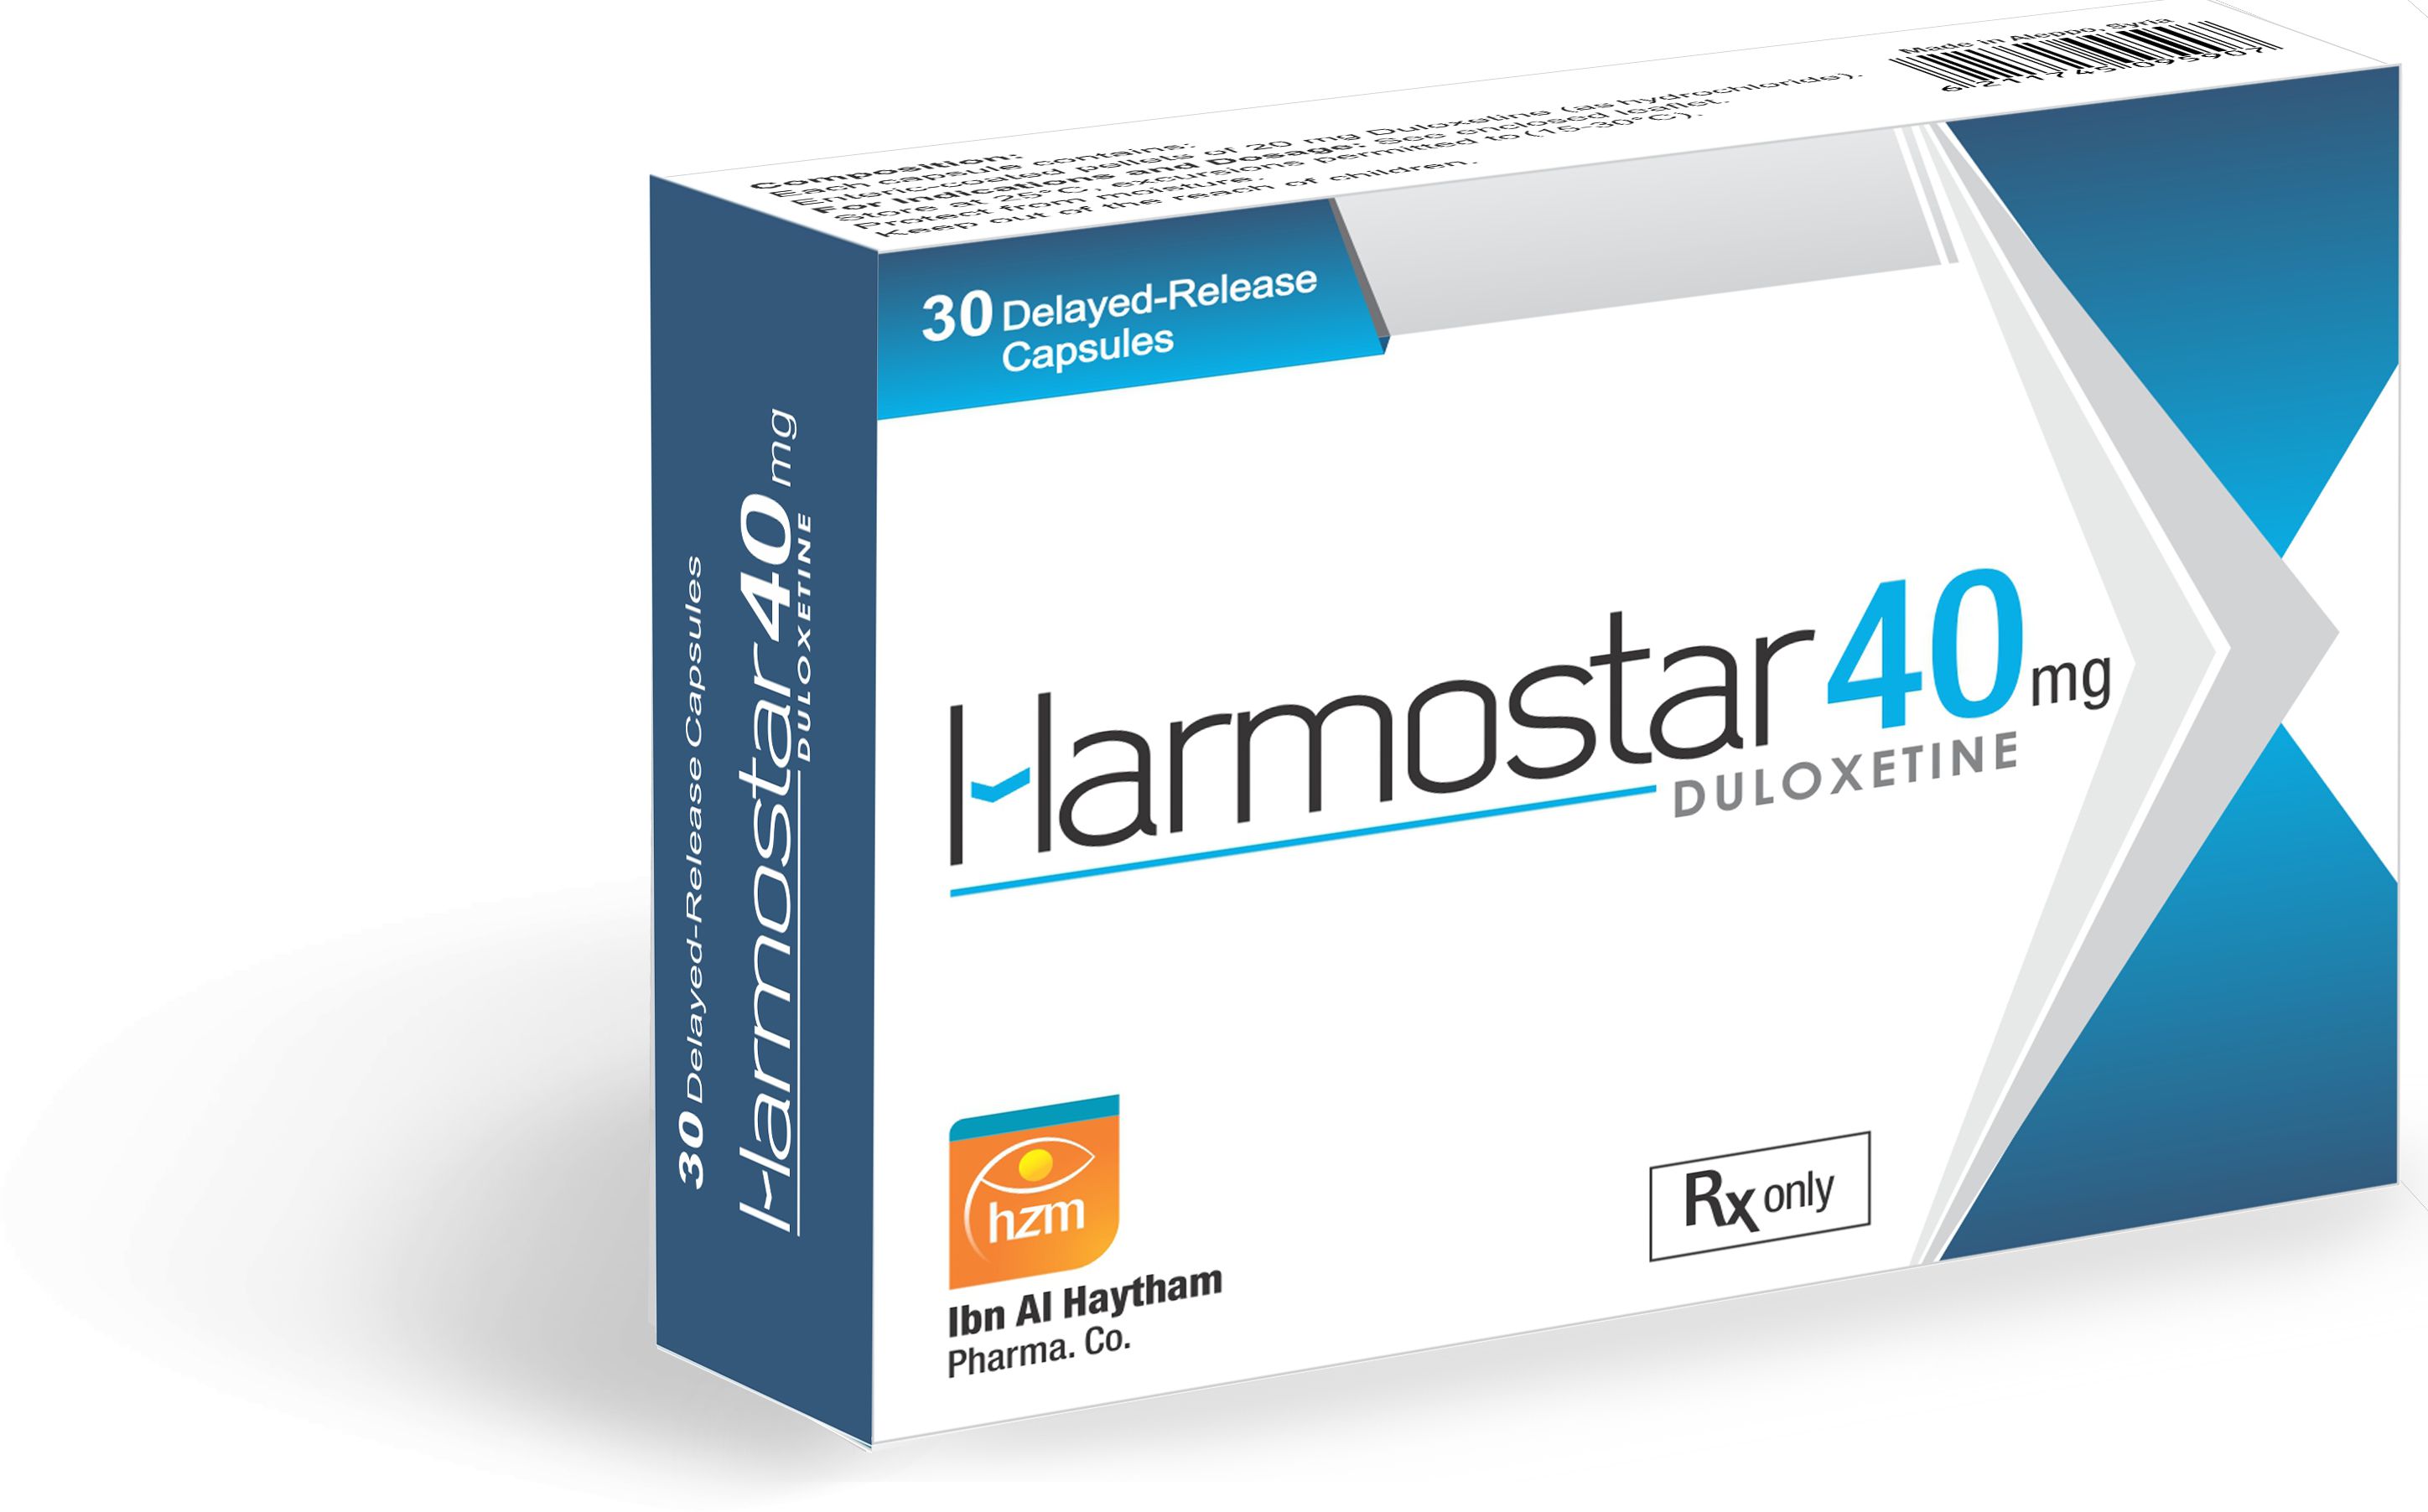 Harmostar 40 mg